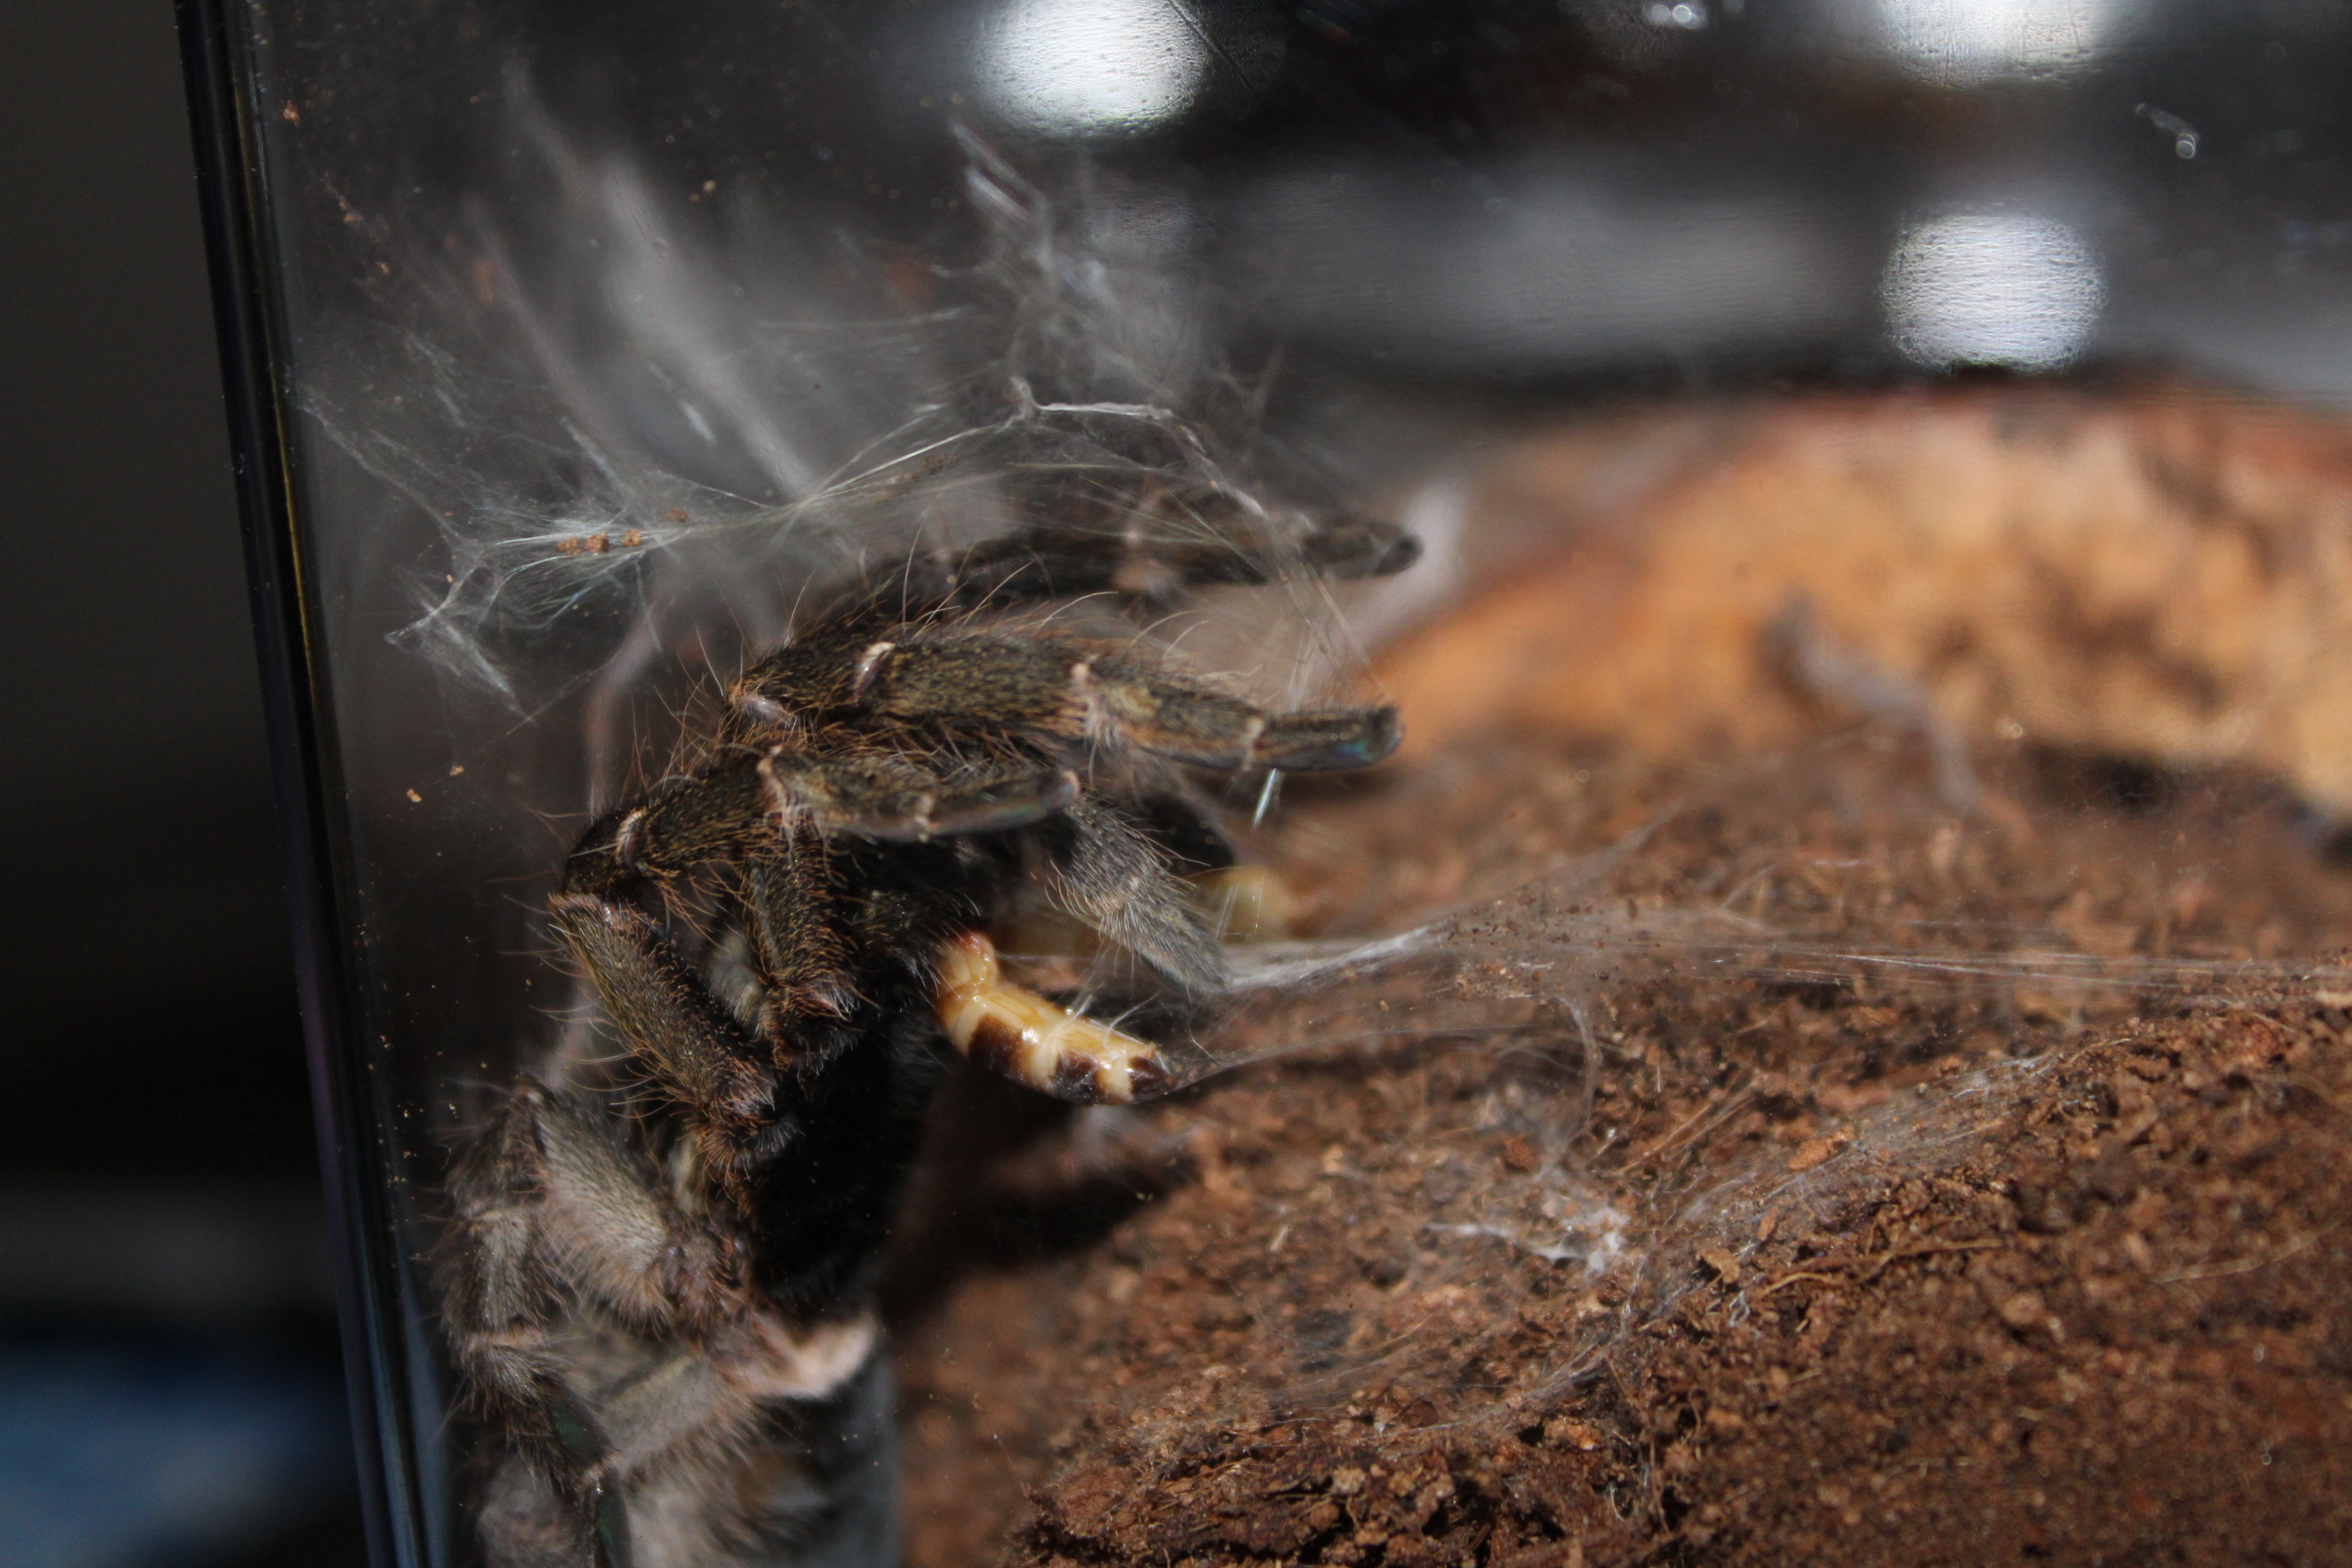 Ceratogyrus darlingi eats a superworm